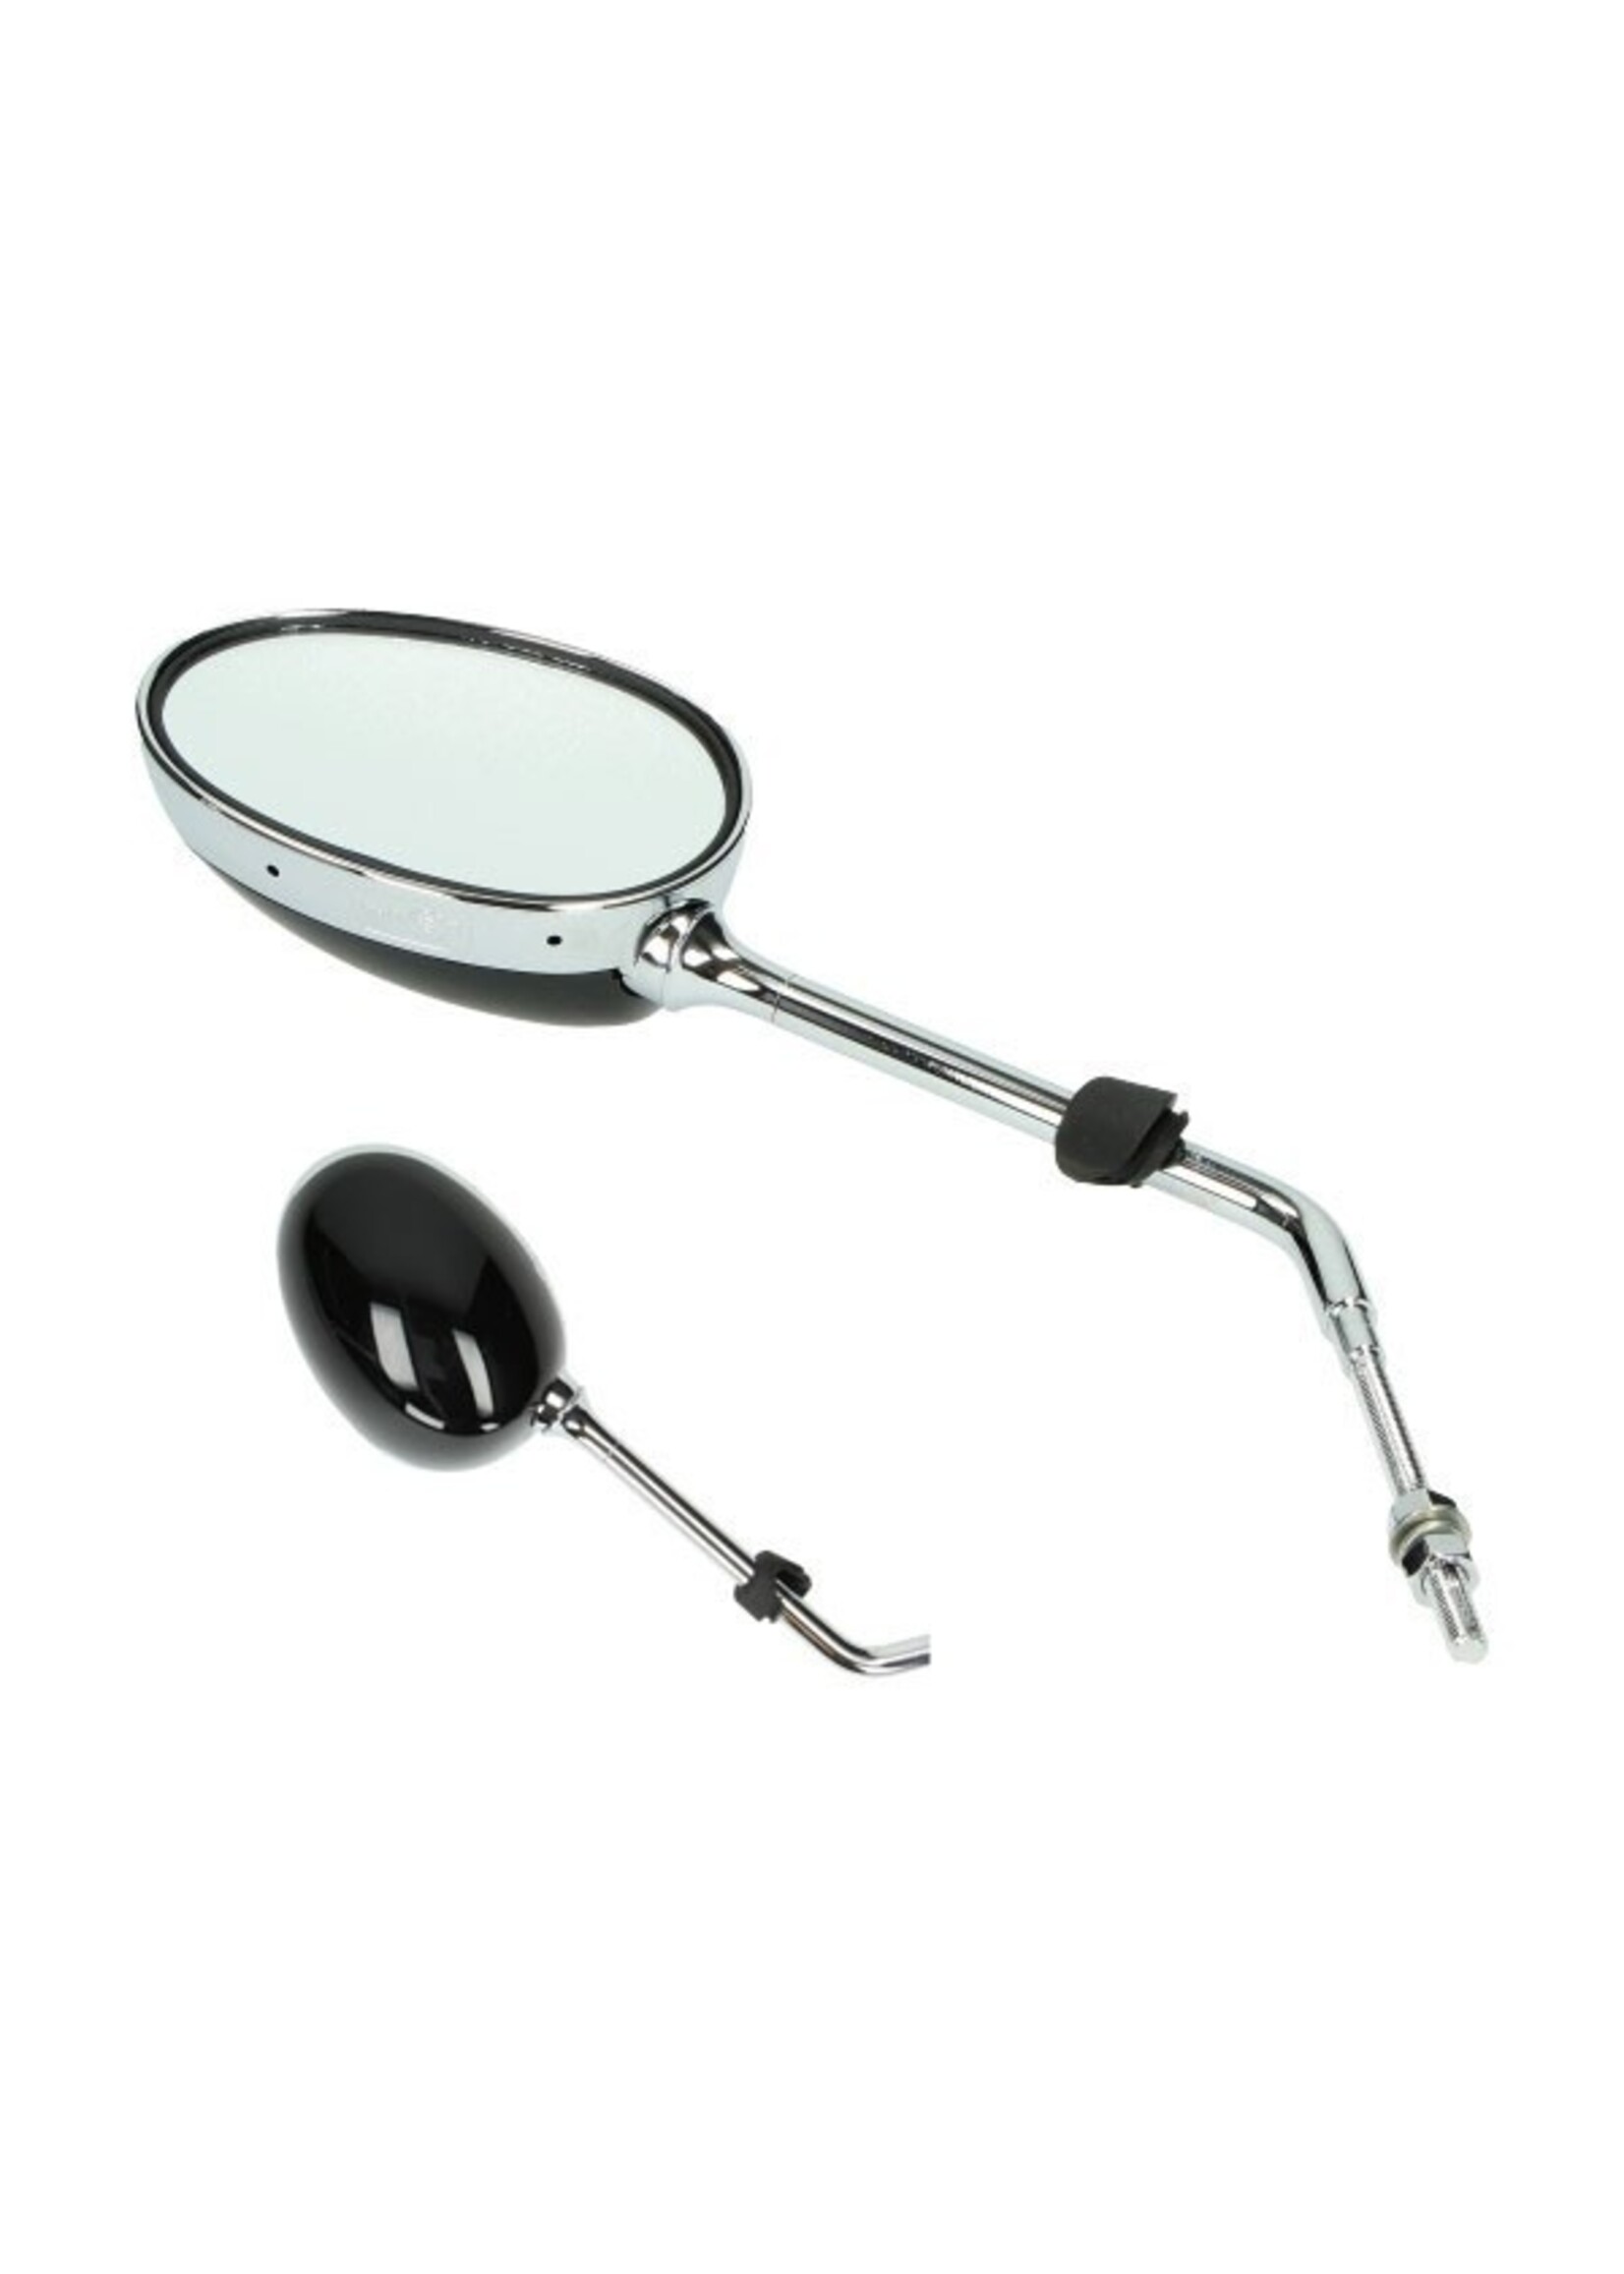 Peugeot spiegel django chroom/zwart links orig 787327n